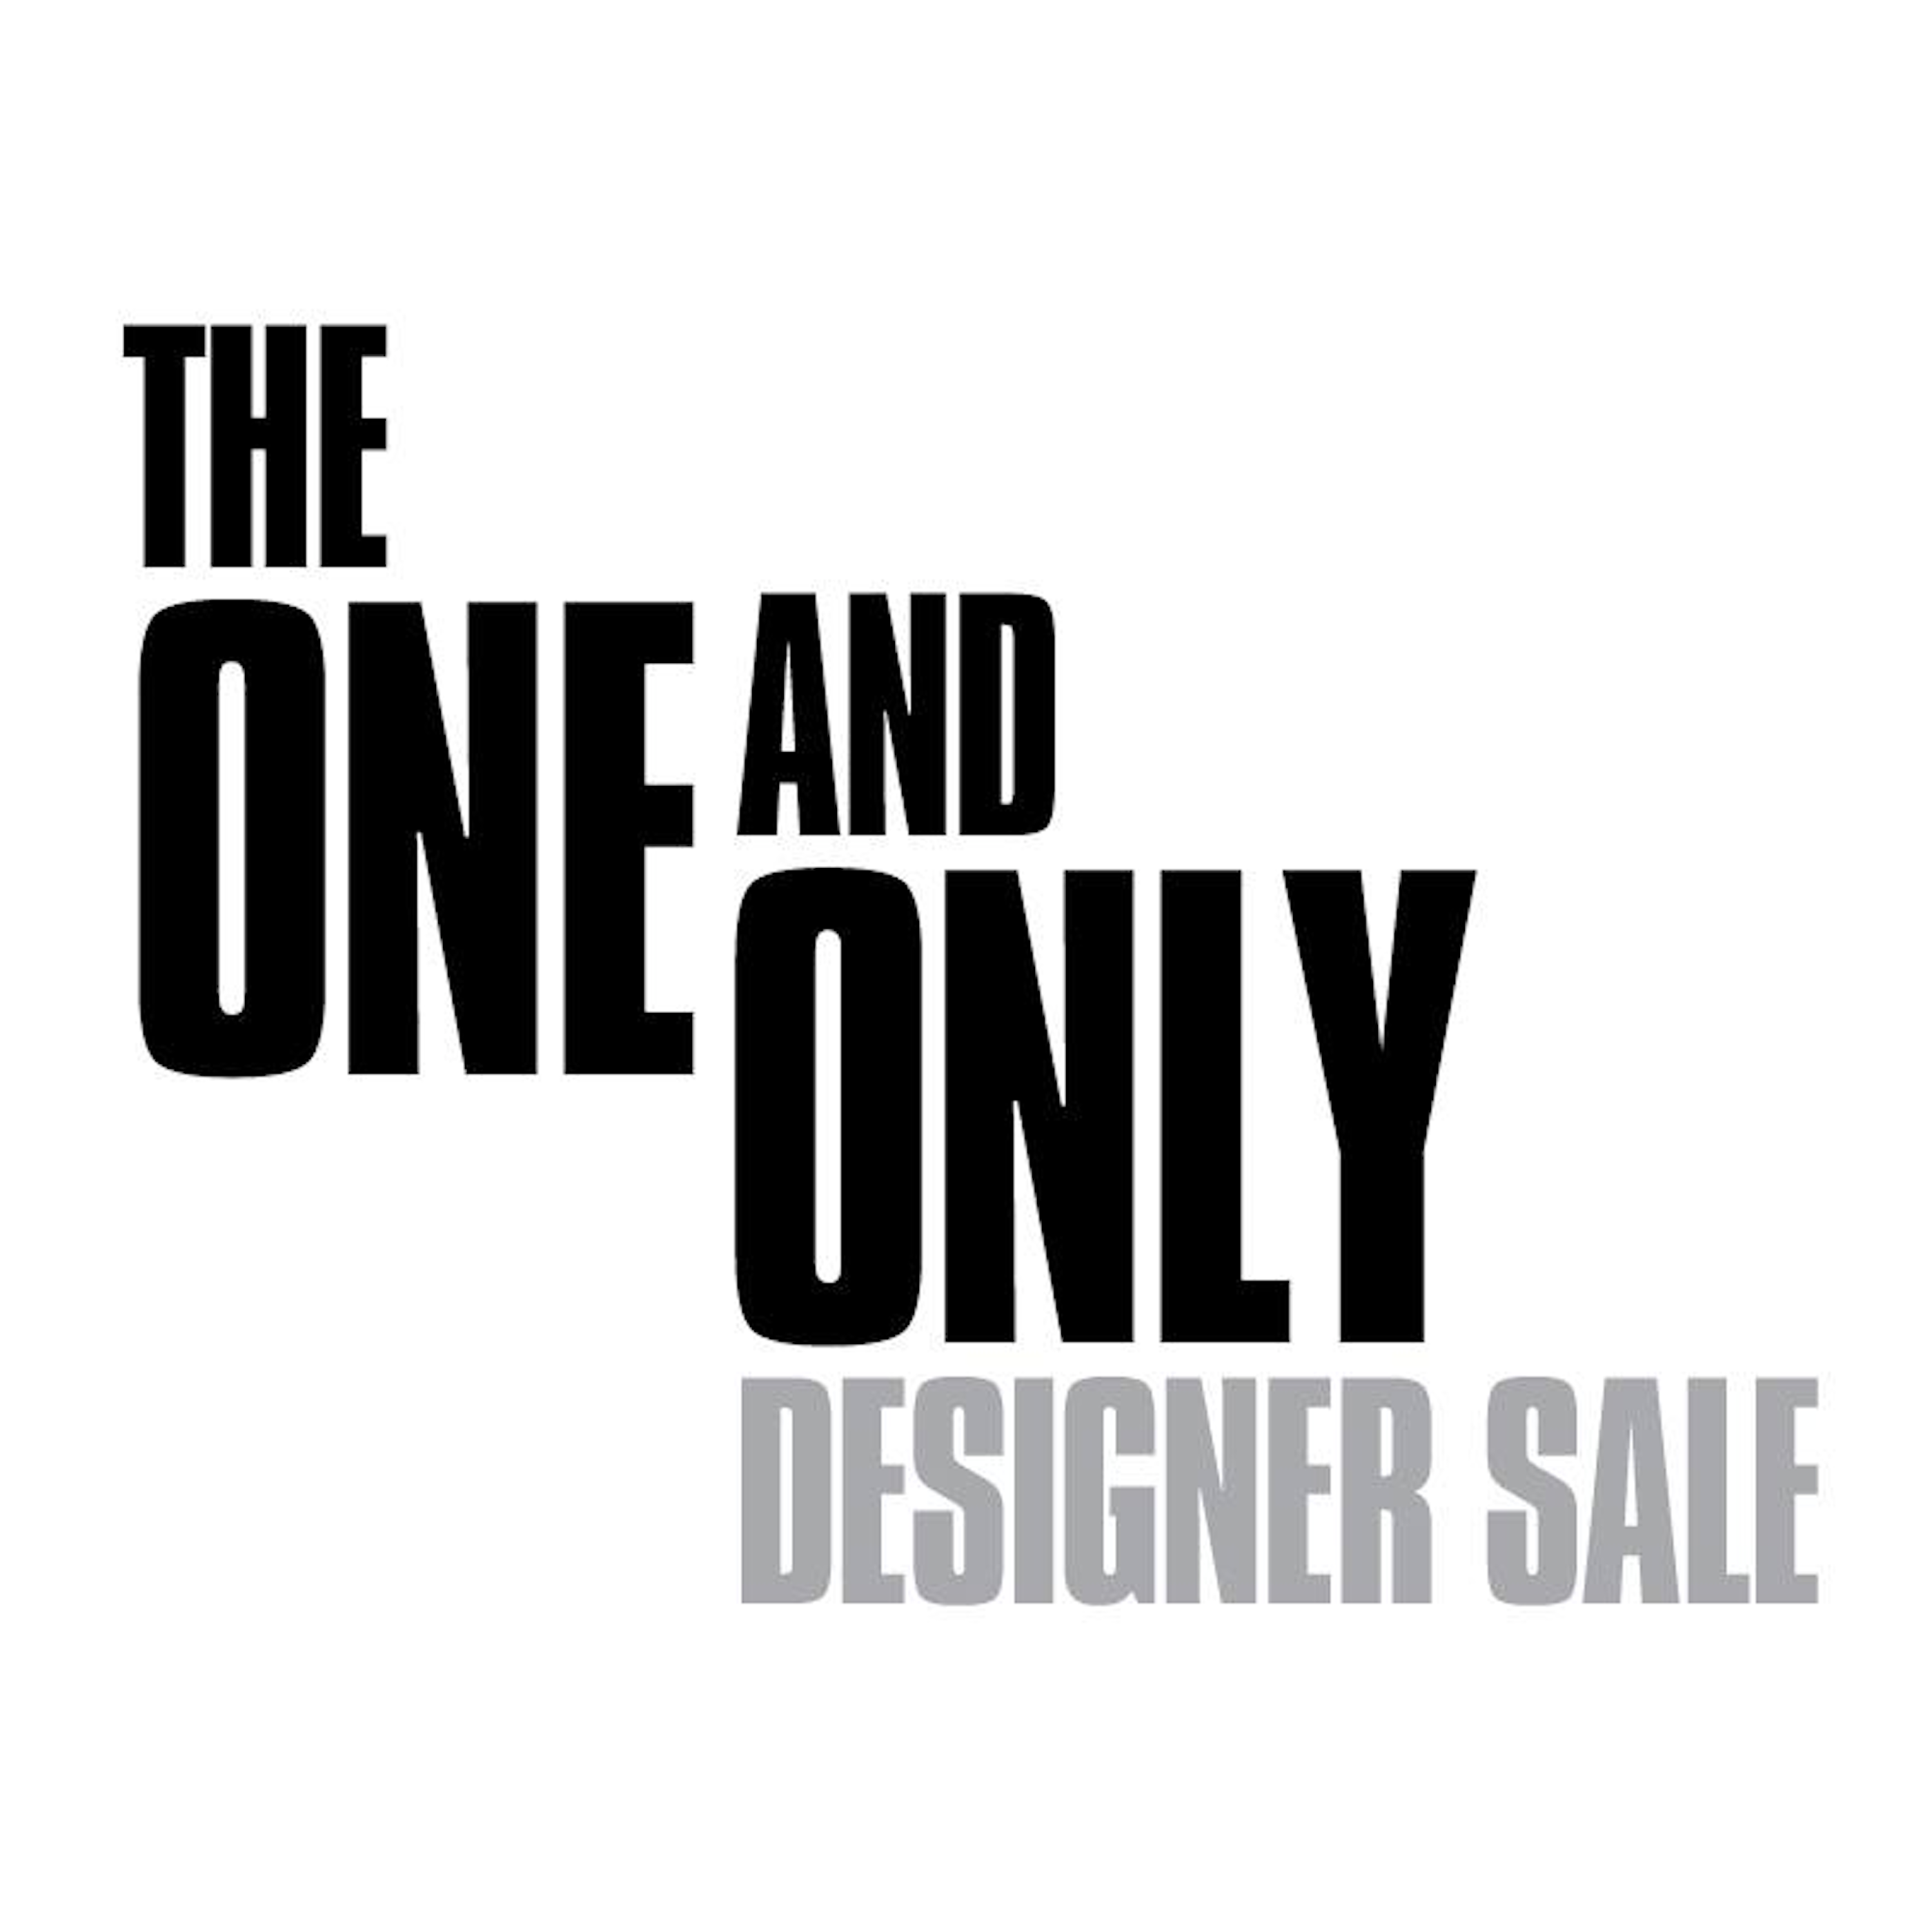 One & Only Designer Sale